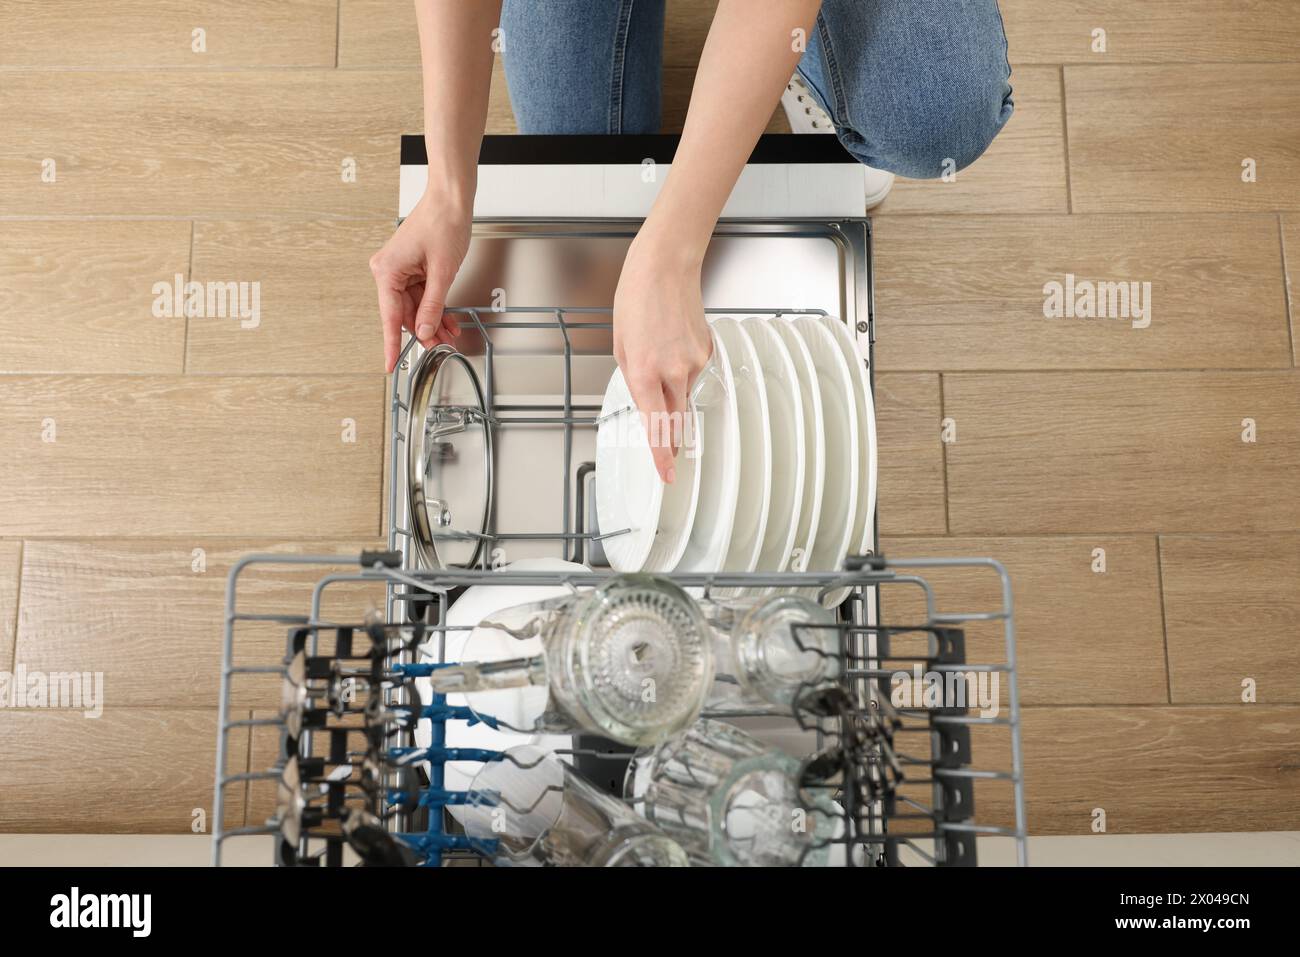 Frau, die Geschirrspüler mit Gläsern und Tellern lädt, Blick von oben Stockfoto